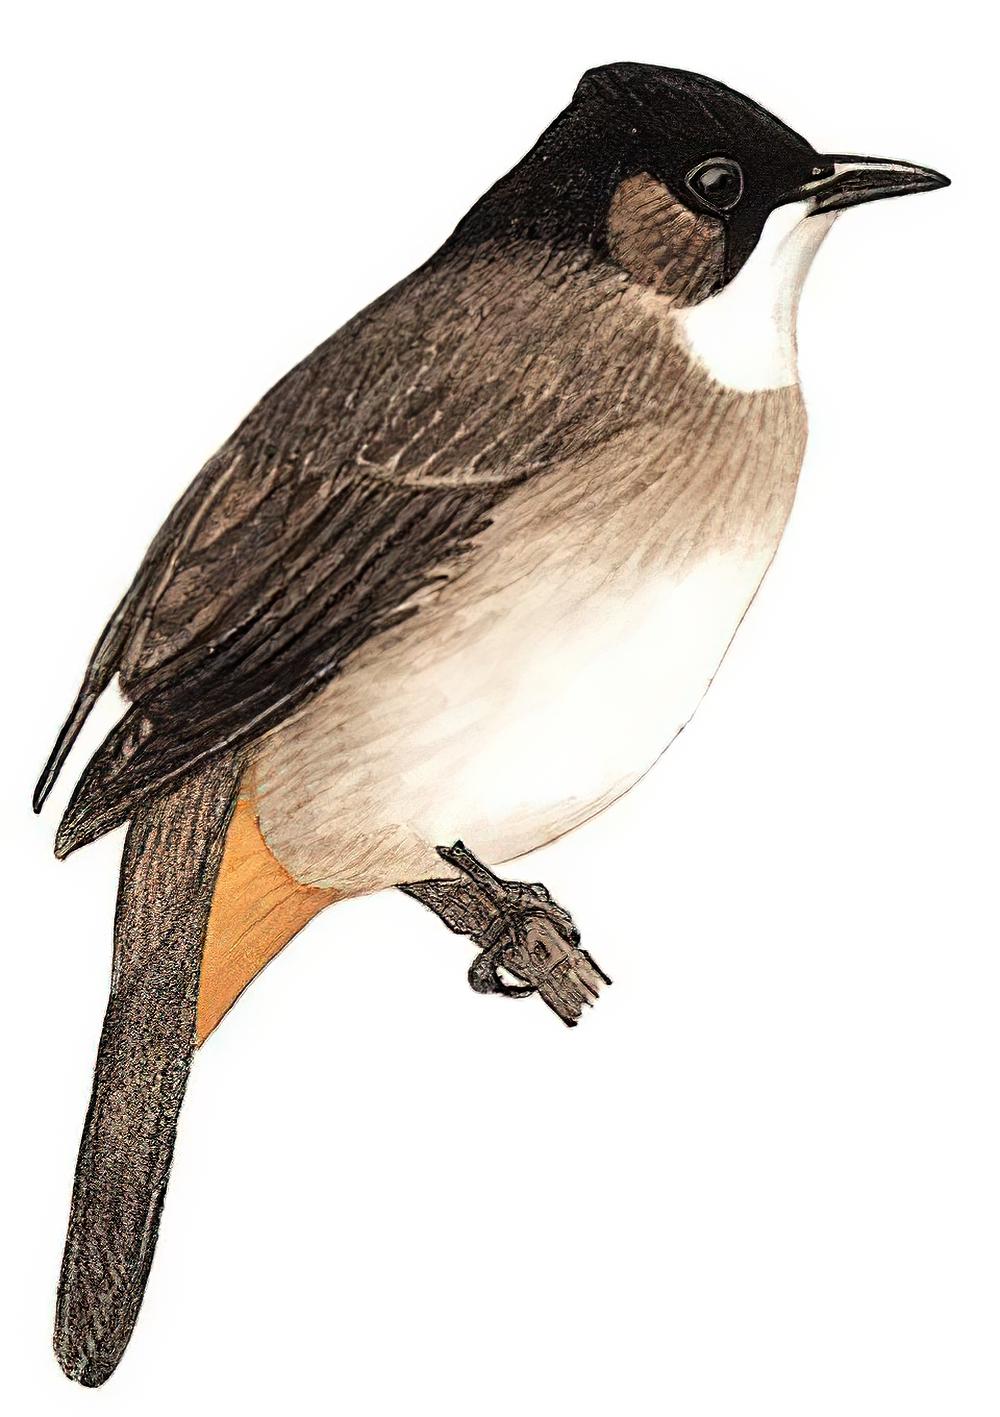 黄臀鹎 / Brown-breasted Bulbul / Pycnonotus xanthorrhous